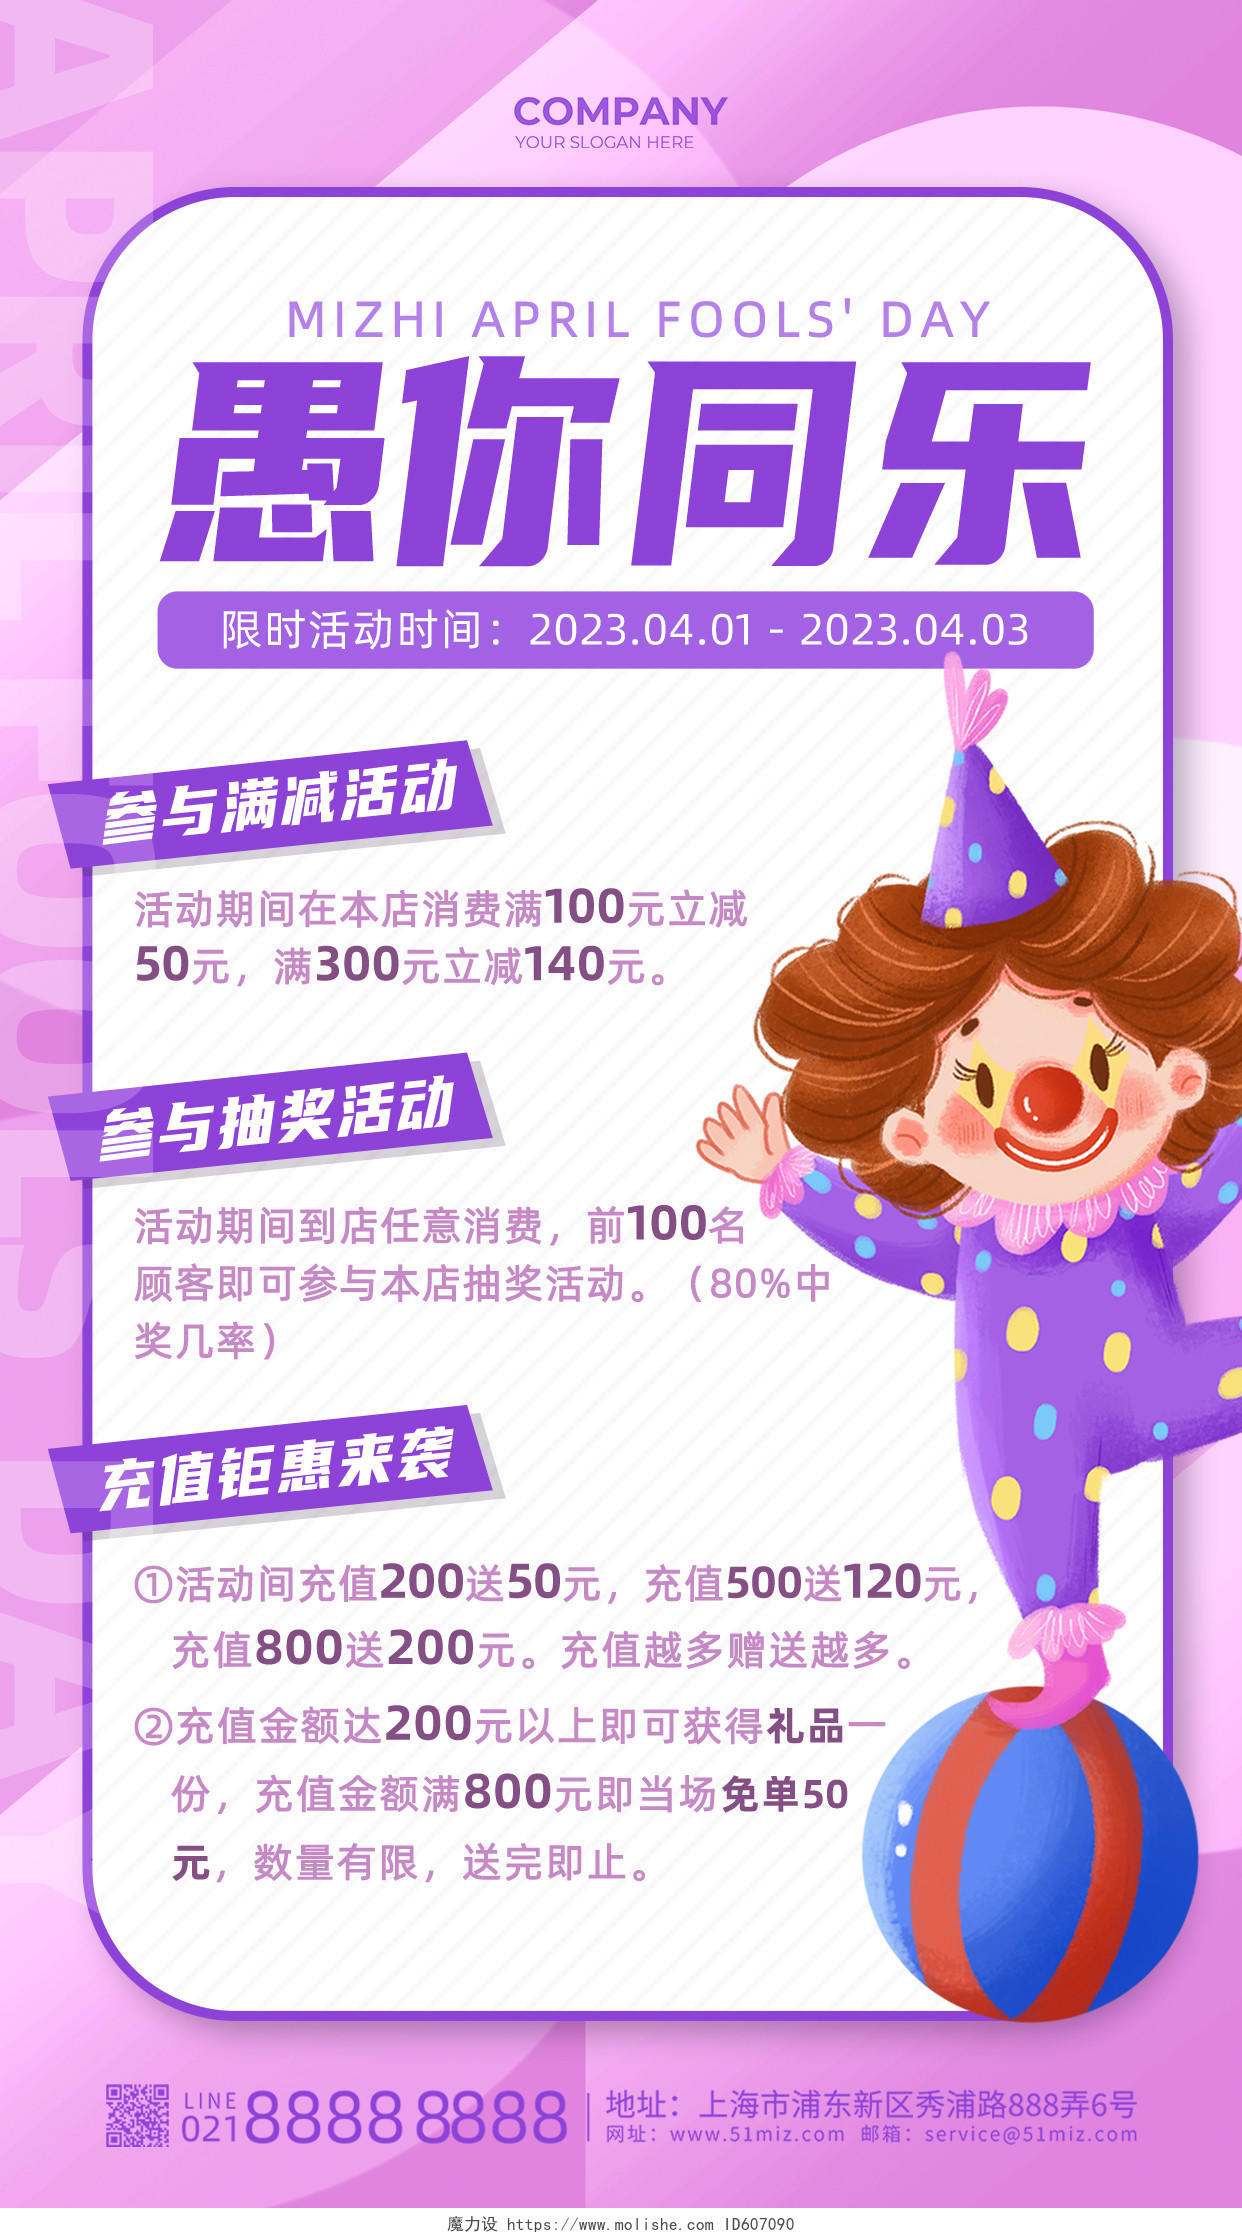 粉紫色简约插画风41愚人节促销活动手机海报